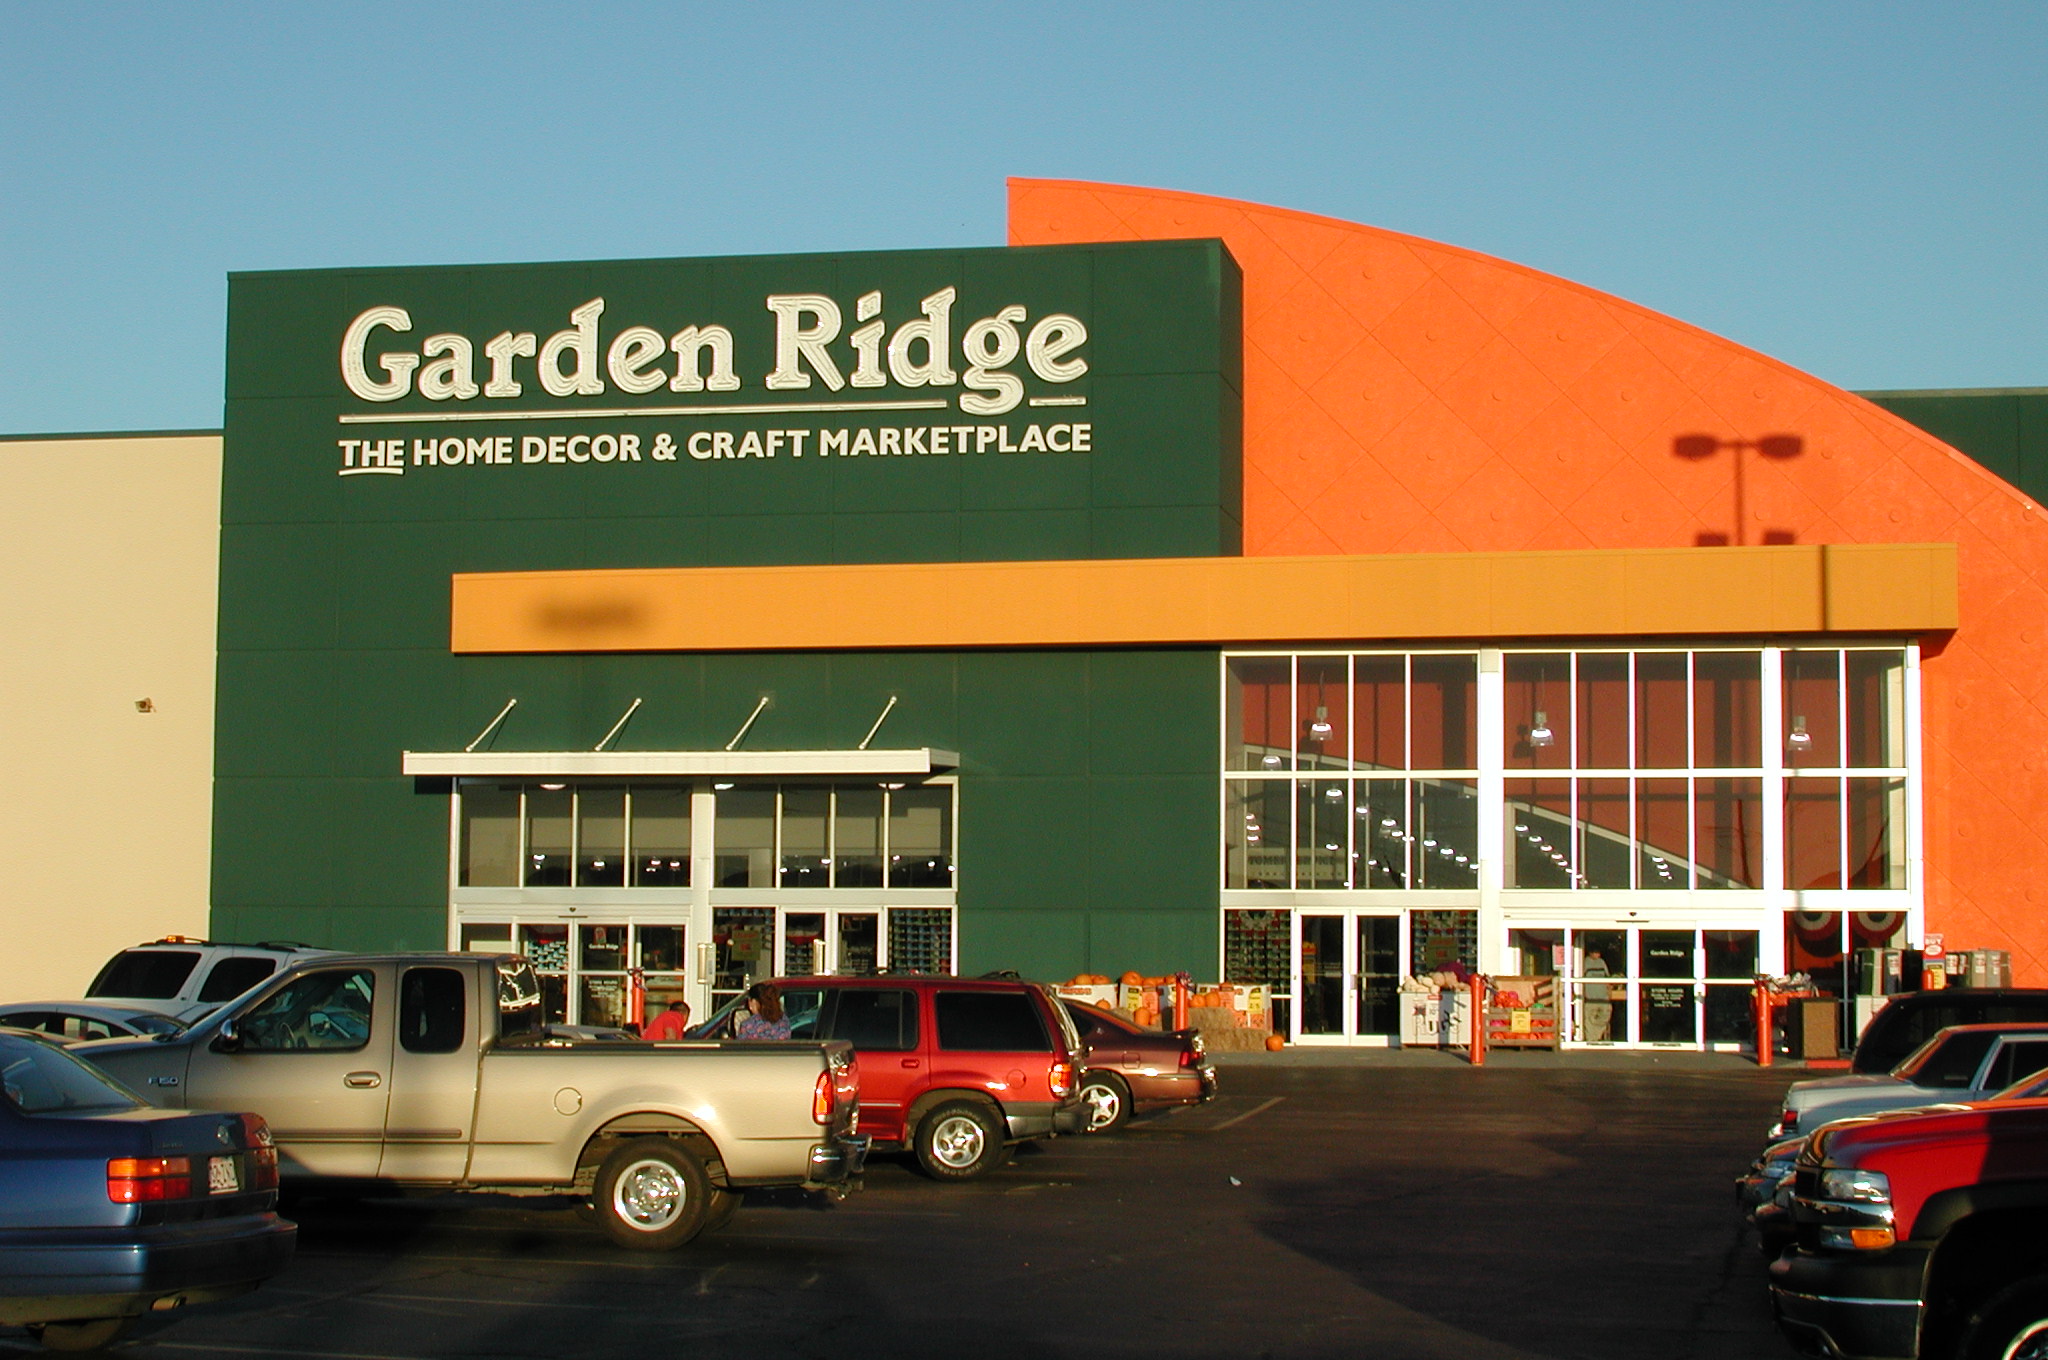 Garden Ridge